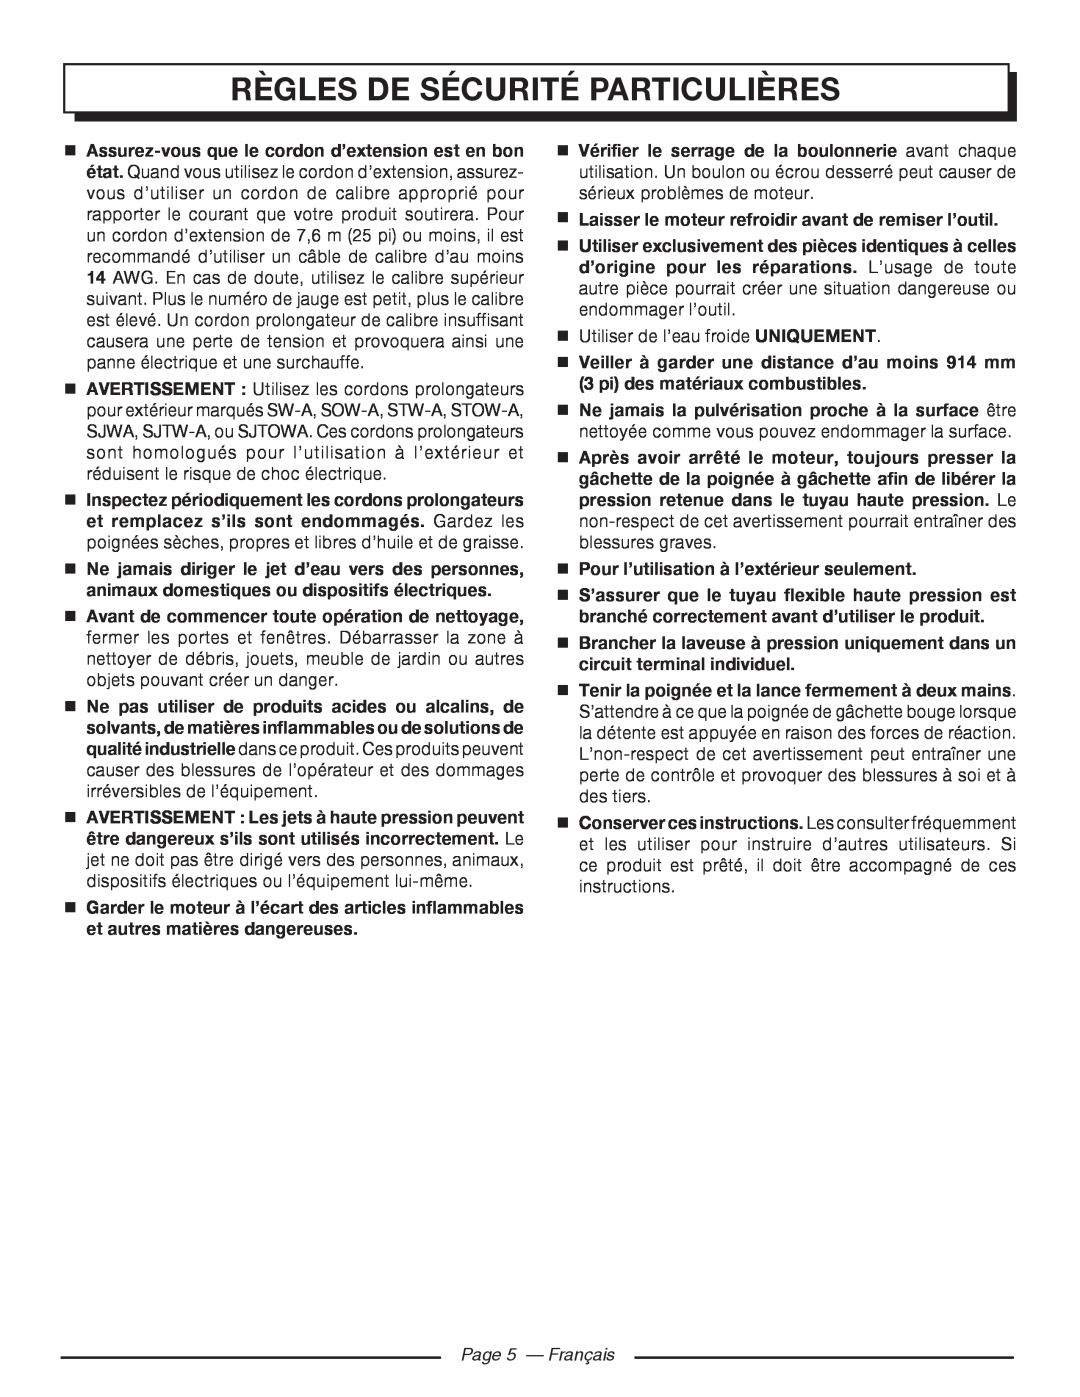 Homelite UT80720 Page 5 - Français, Règles De Sécurité Particulières,  Assurez-vous que le cordon d’extension est en bon 